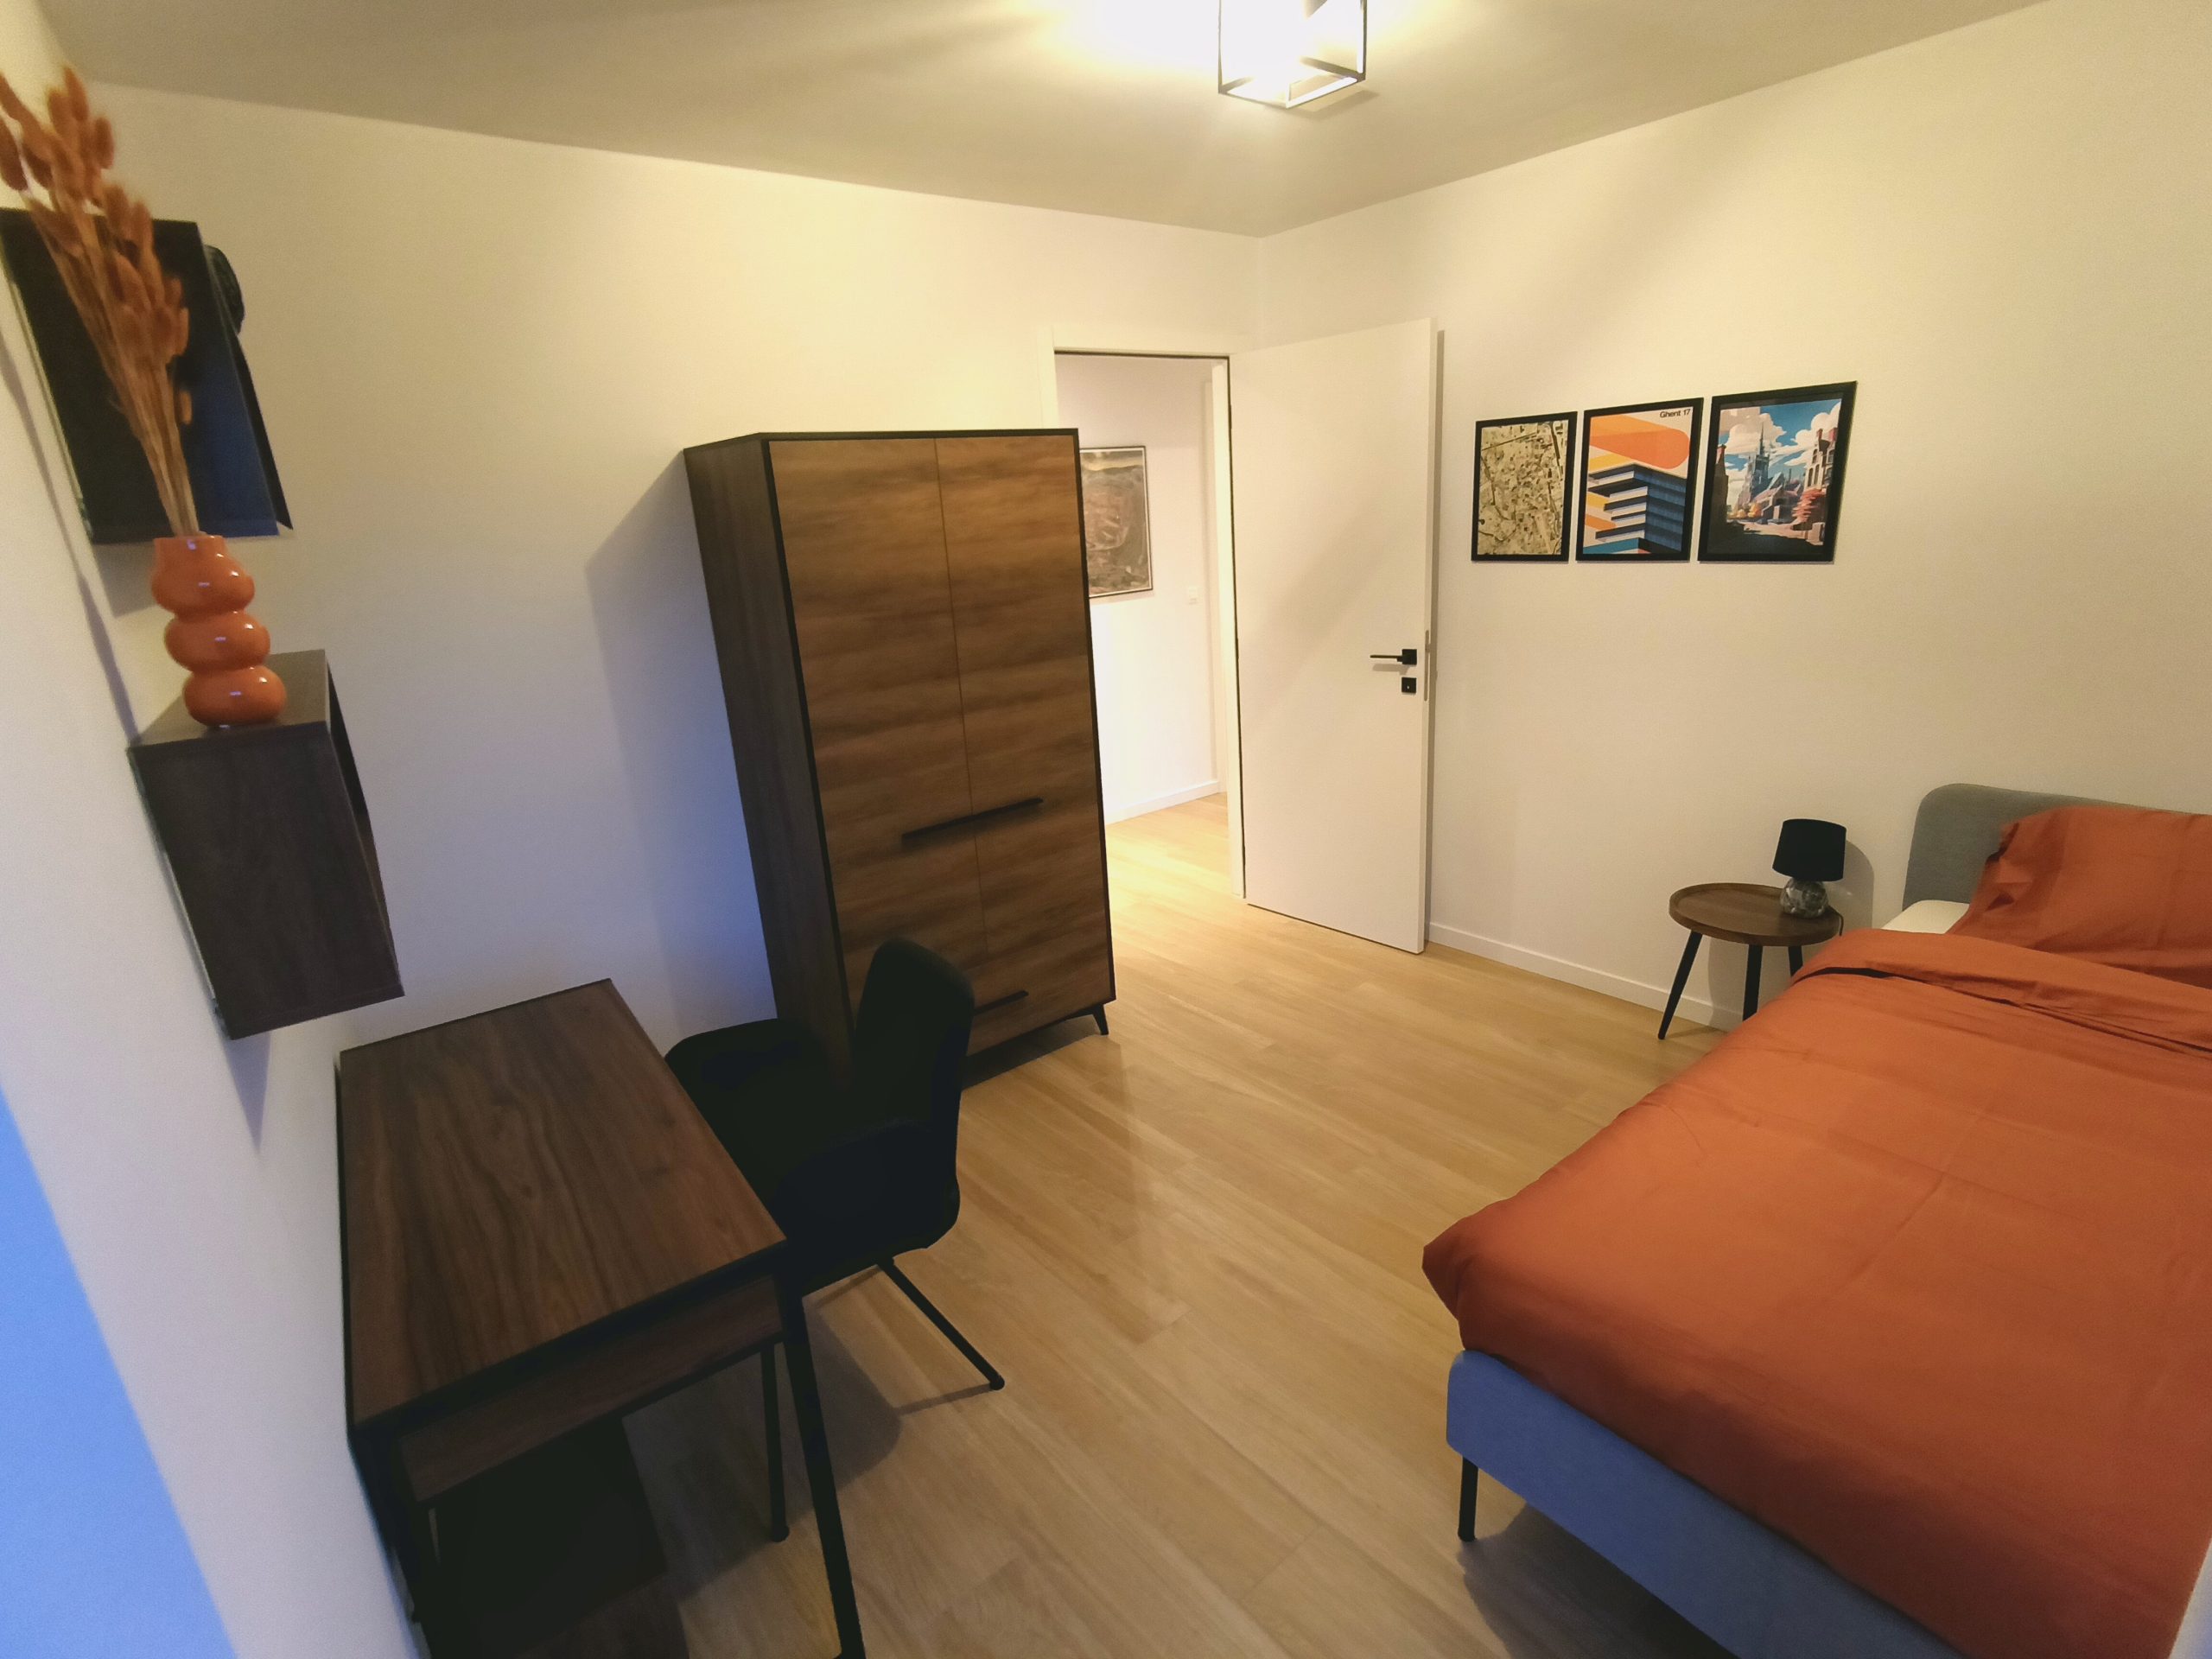 Salvatore - 2 Bedrooms apartment for rent in Ghent bedroom 3